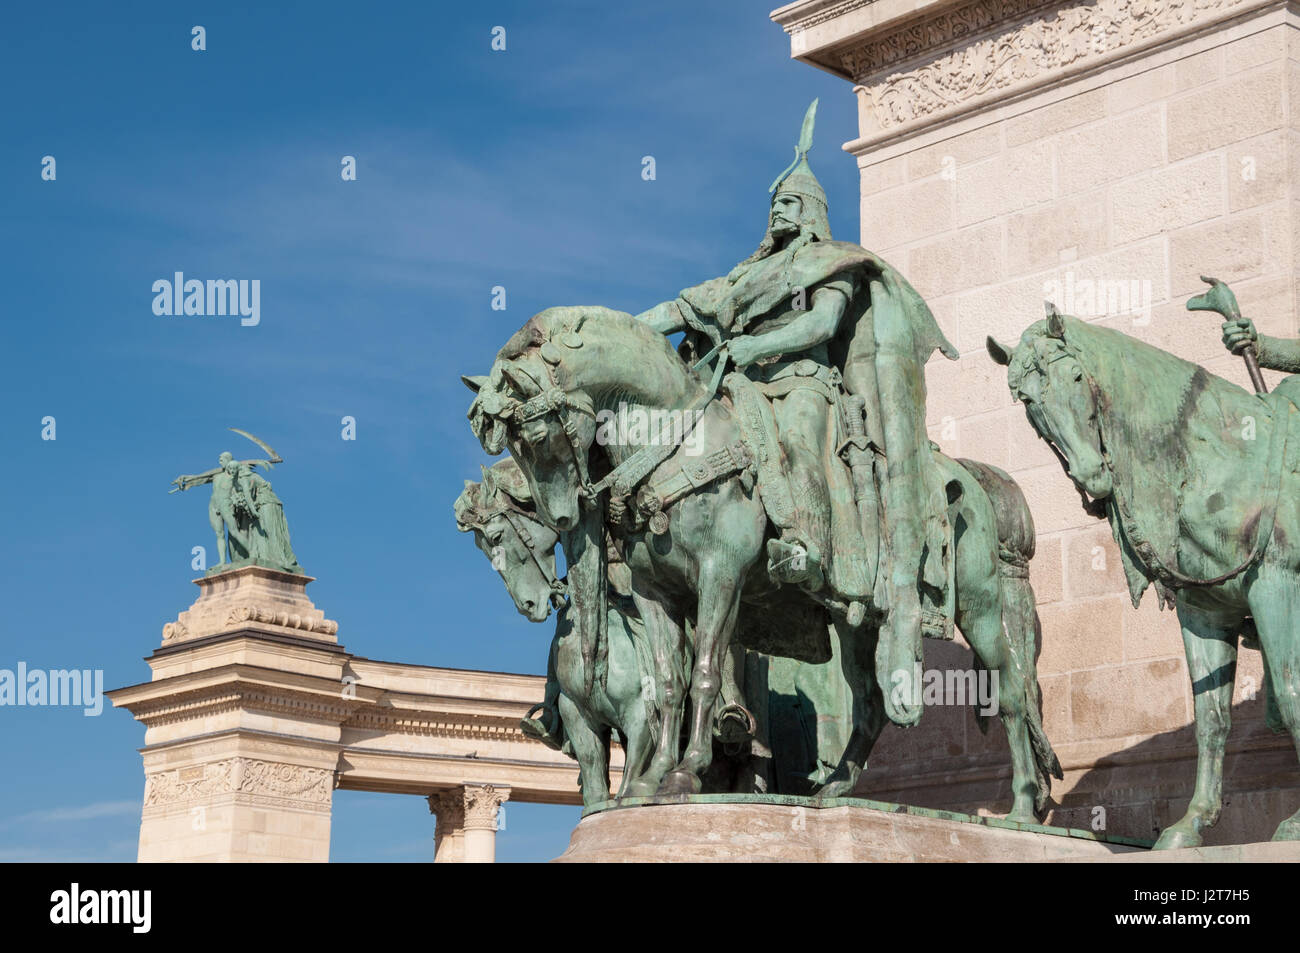 BUDAPEST, Ungarn - 22. Februar 2016: Milleniumsdenkmal auf dem Heldenplatz Square oder Hosok Tere gehört zu den wichtigsten Plätzen in Budapest, Ungarn. Stockfoto